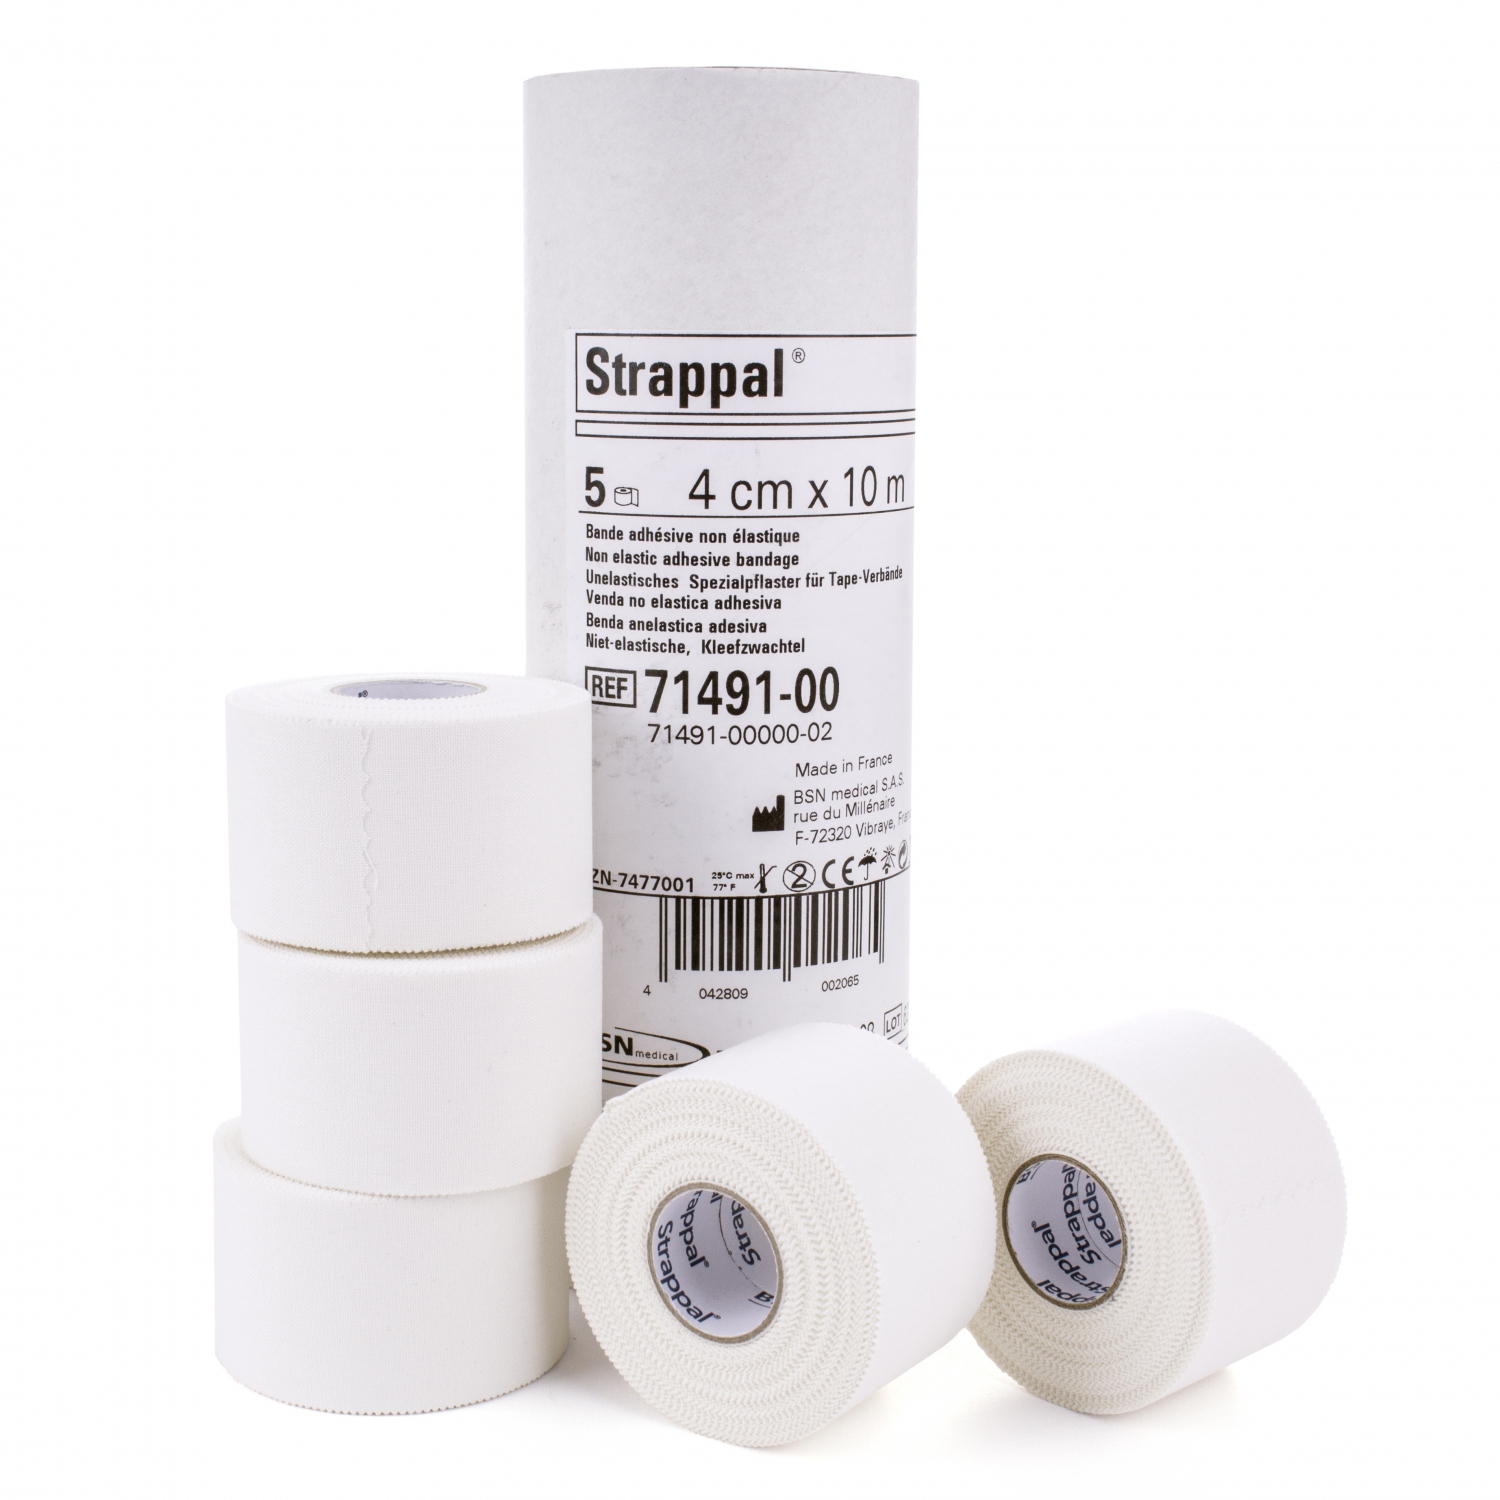 Strappal - peau sensible - 4 cm x 10 m -  tube 5 pcs